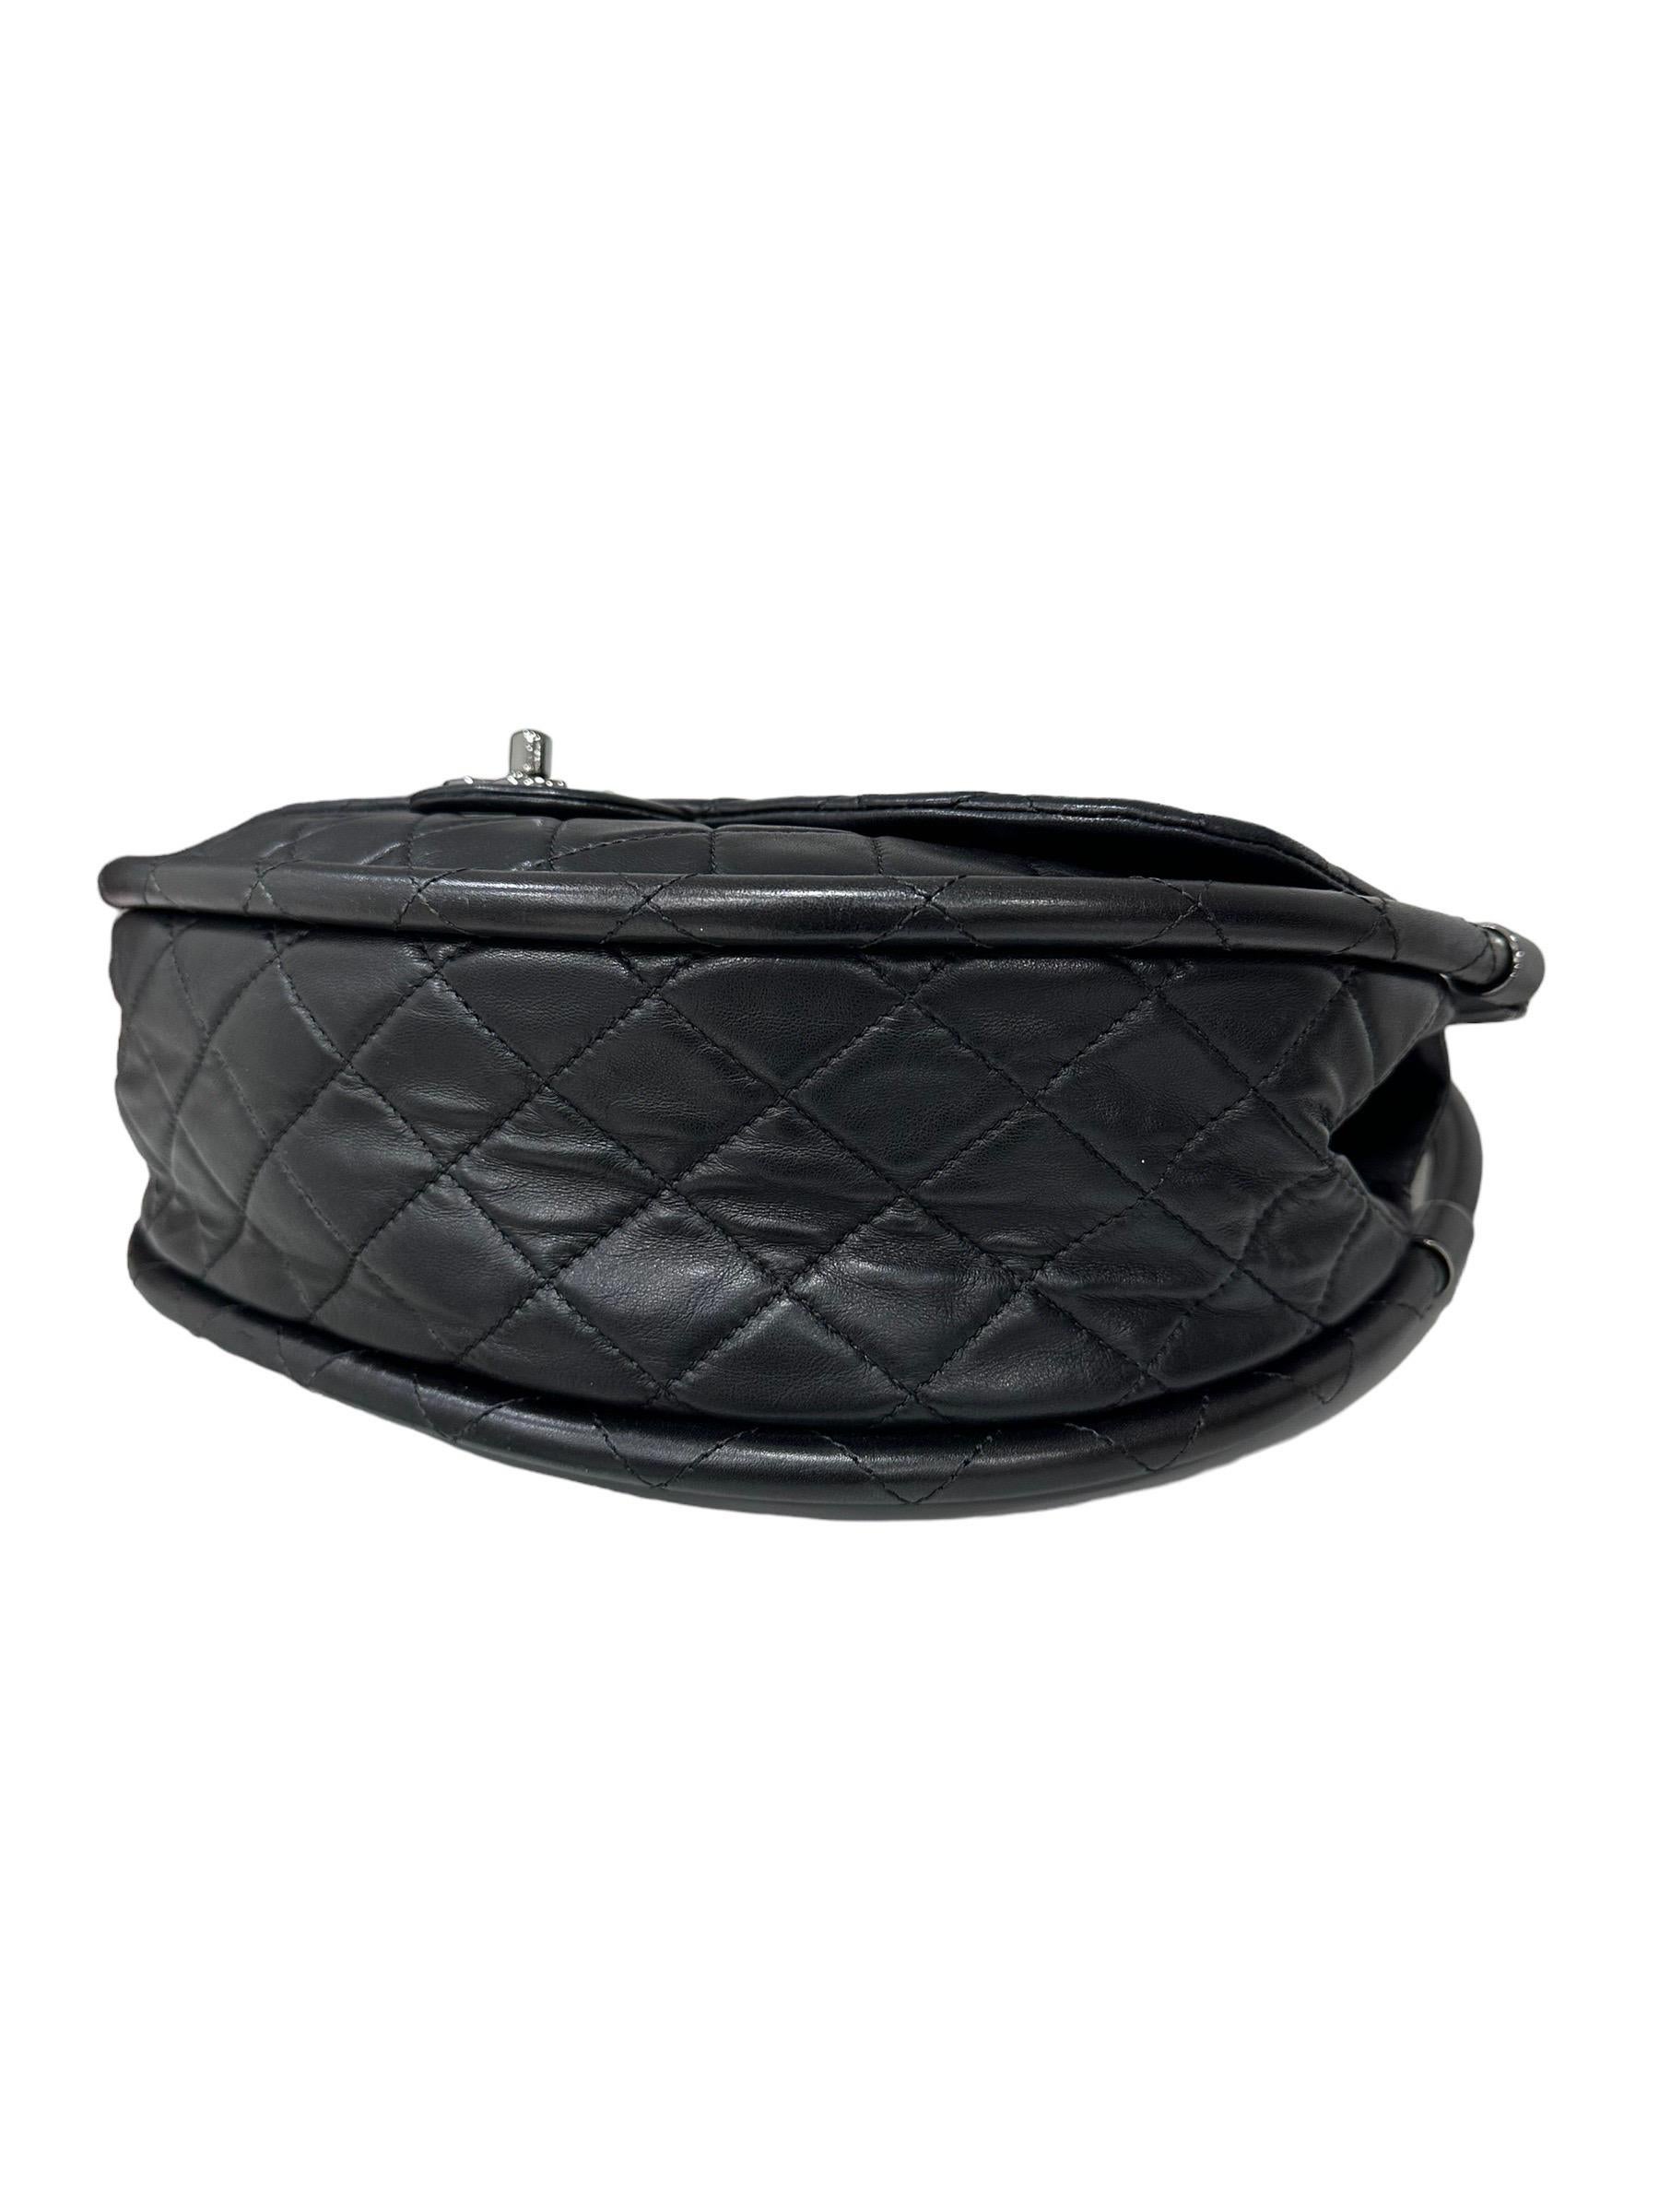 Chanel Black Leather Hula Hoop Shoulder Bag For Sale 1